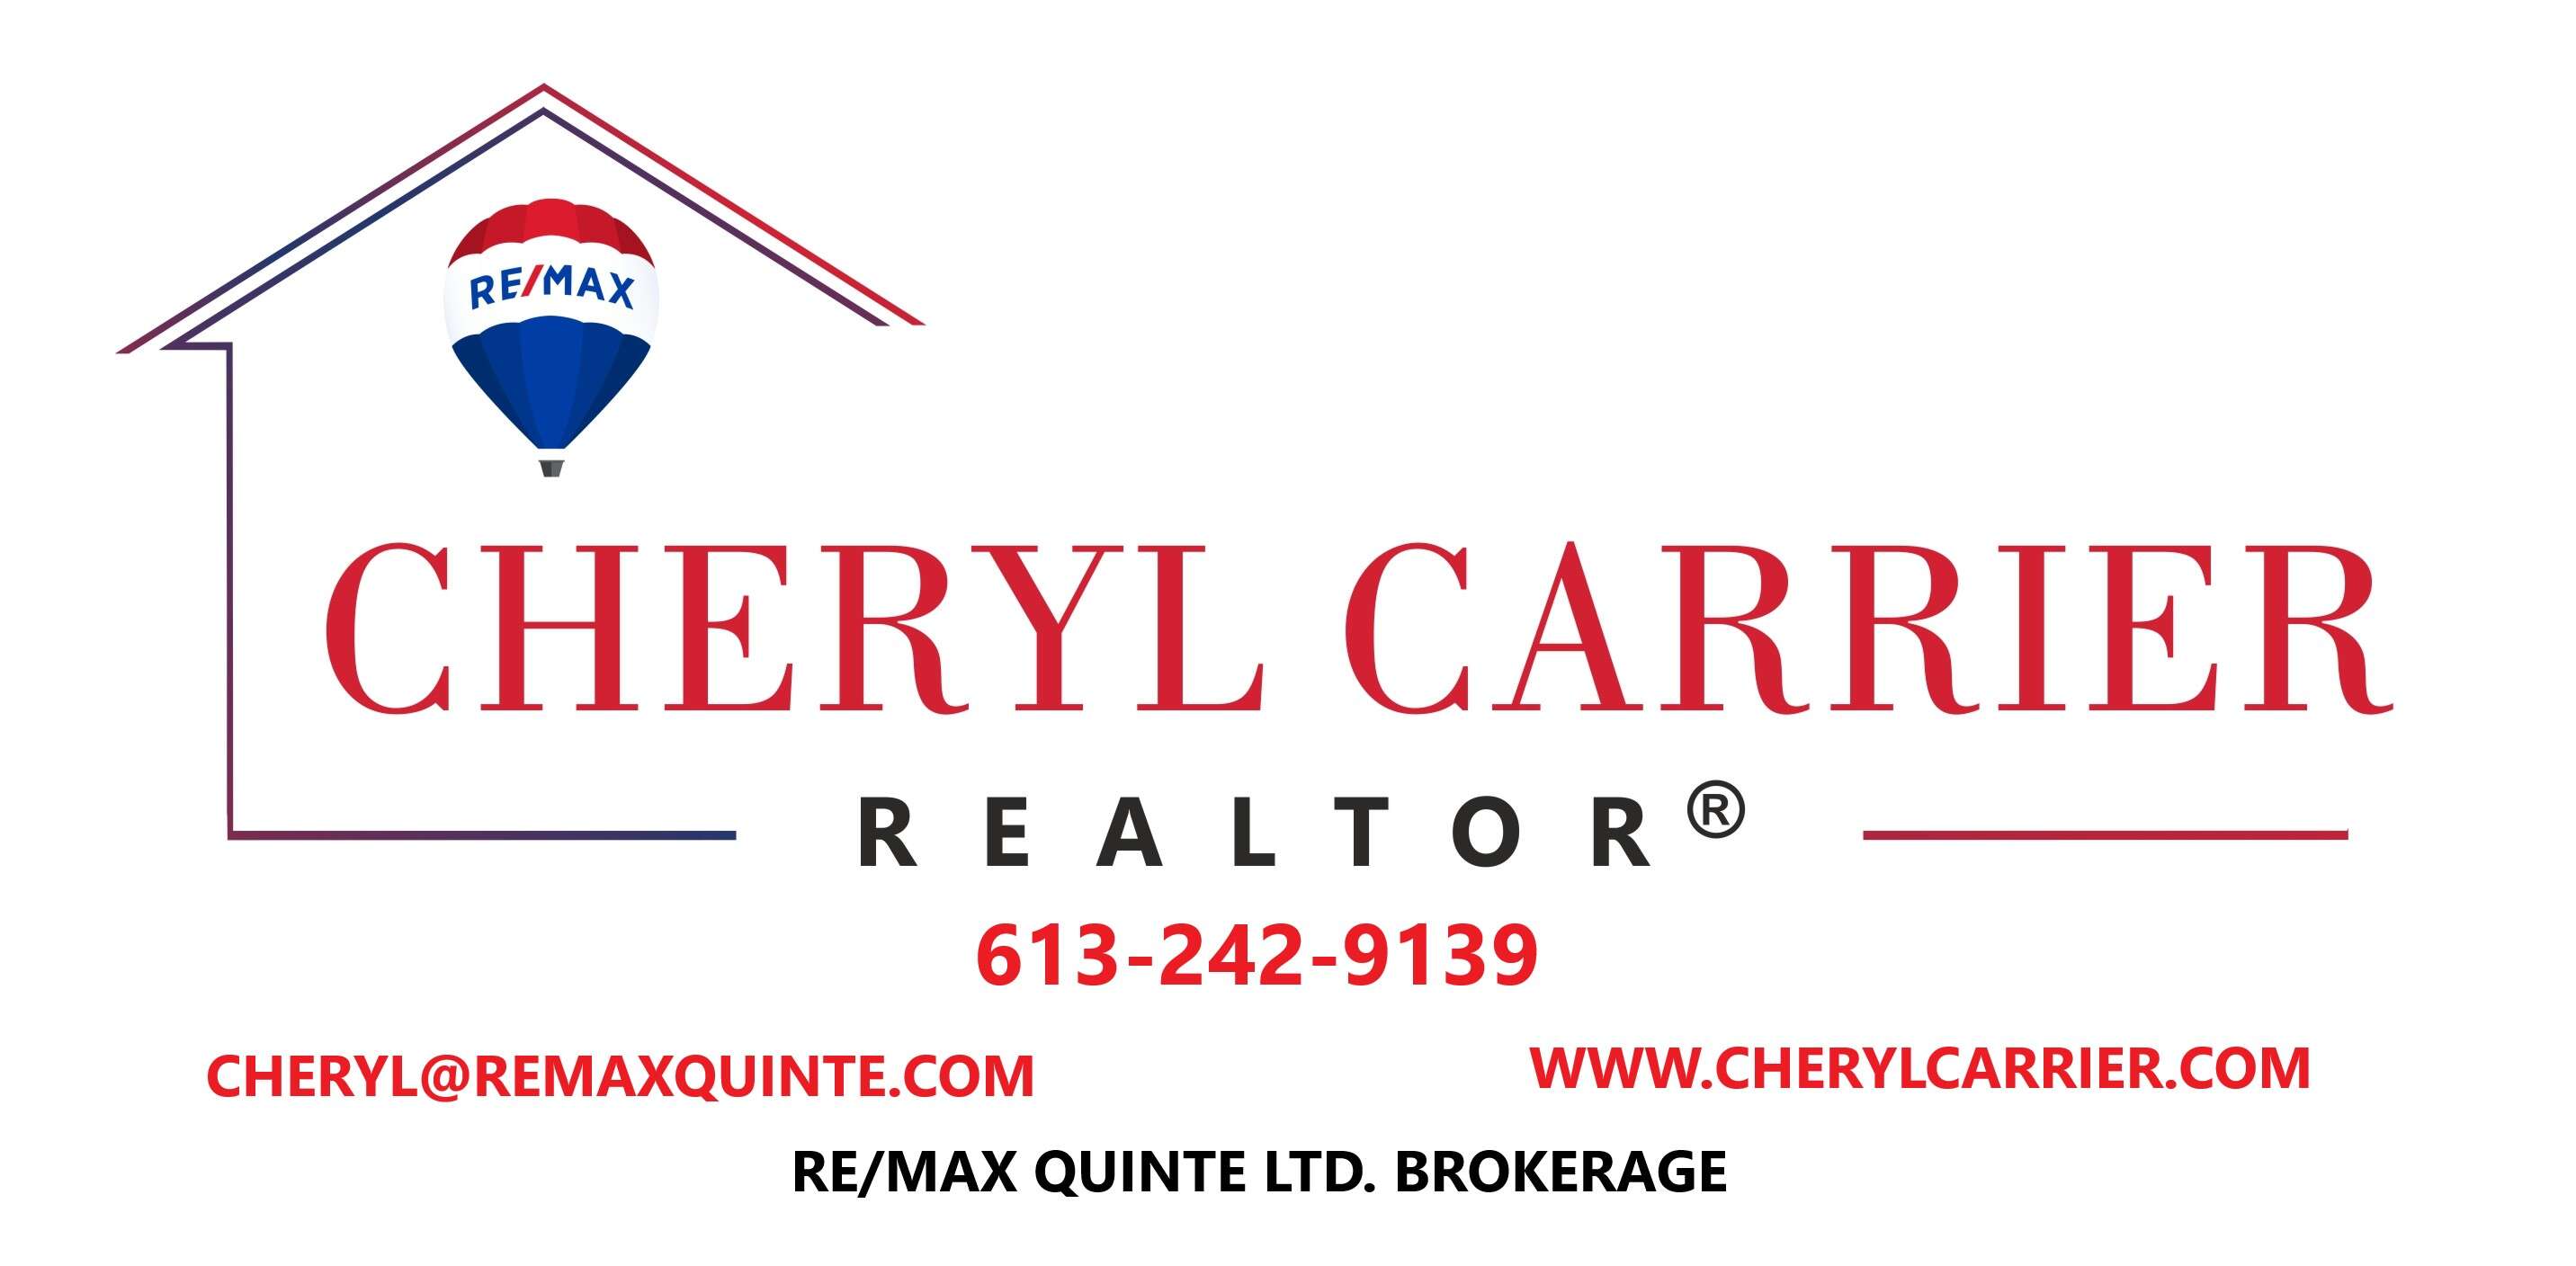 RE/MAX Quinte Ltd. Cheryl Carrier, REALTOR®